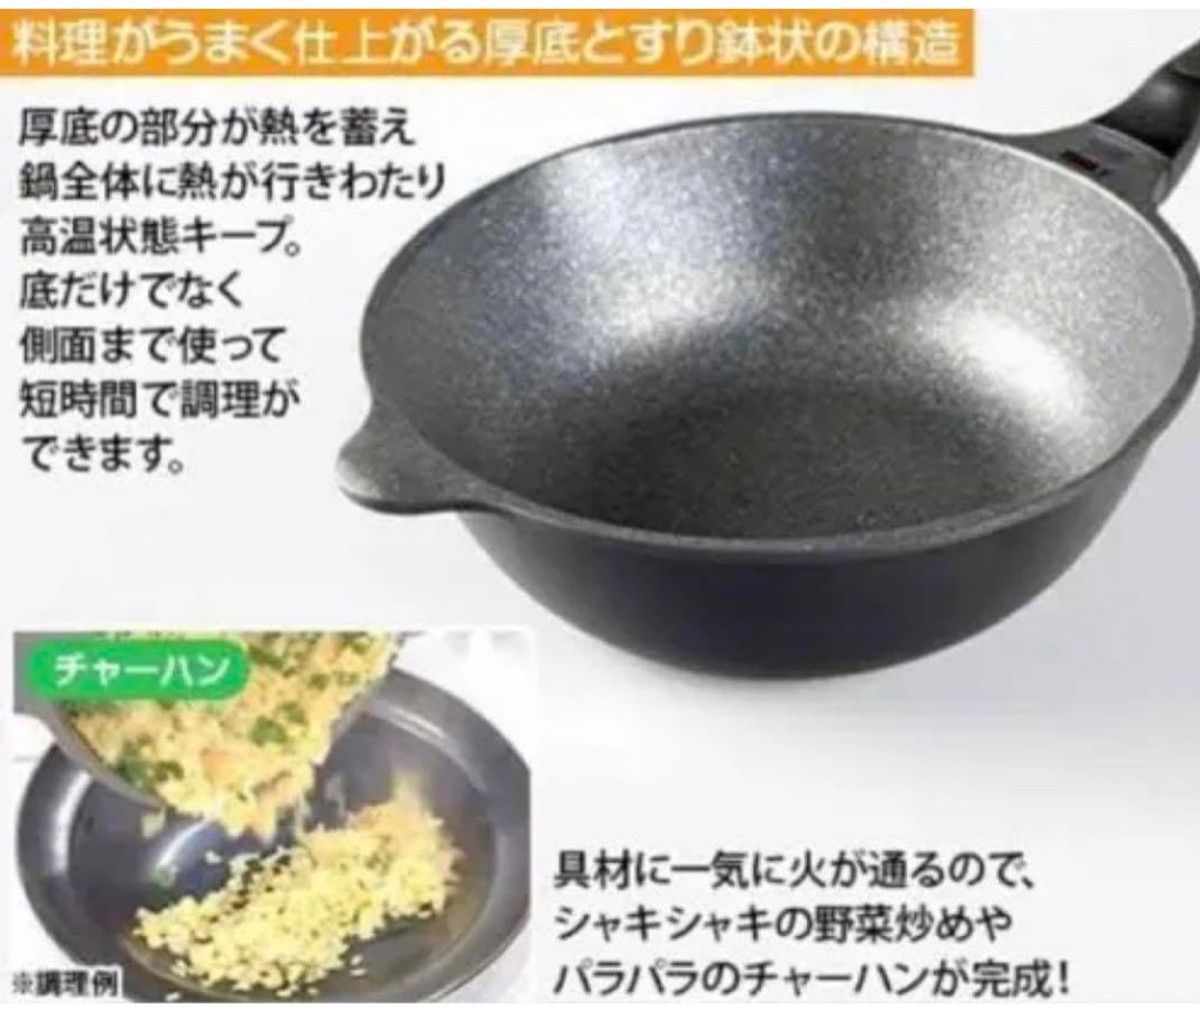 【新品未使用】Hirota 底丸 フライパン 24cm ガス IH 中華鍋 煮込みもできる ご飯も炊ける 日本語取説付 レシピ付